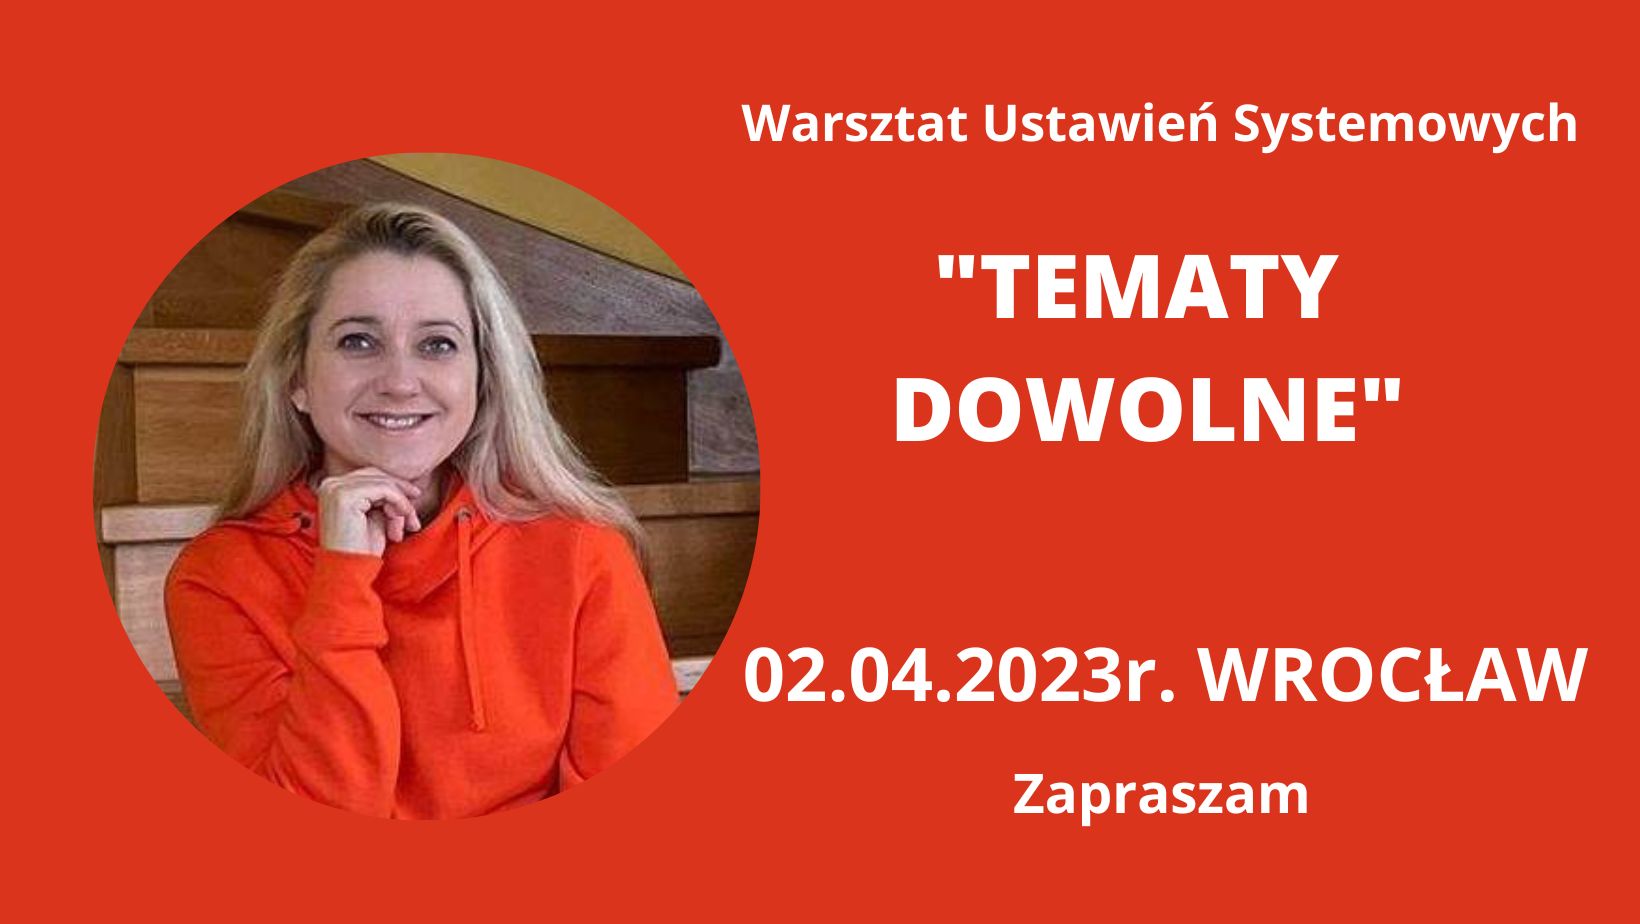 You are currently viewing 02.04.2023r. Wrocław „TEMATY DOWOLNE” Warsztat Ustawień Systemowych